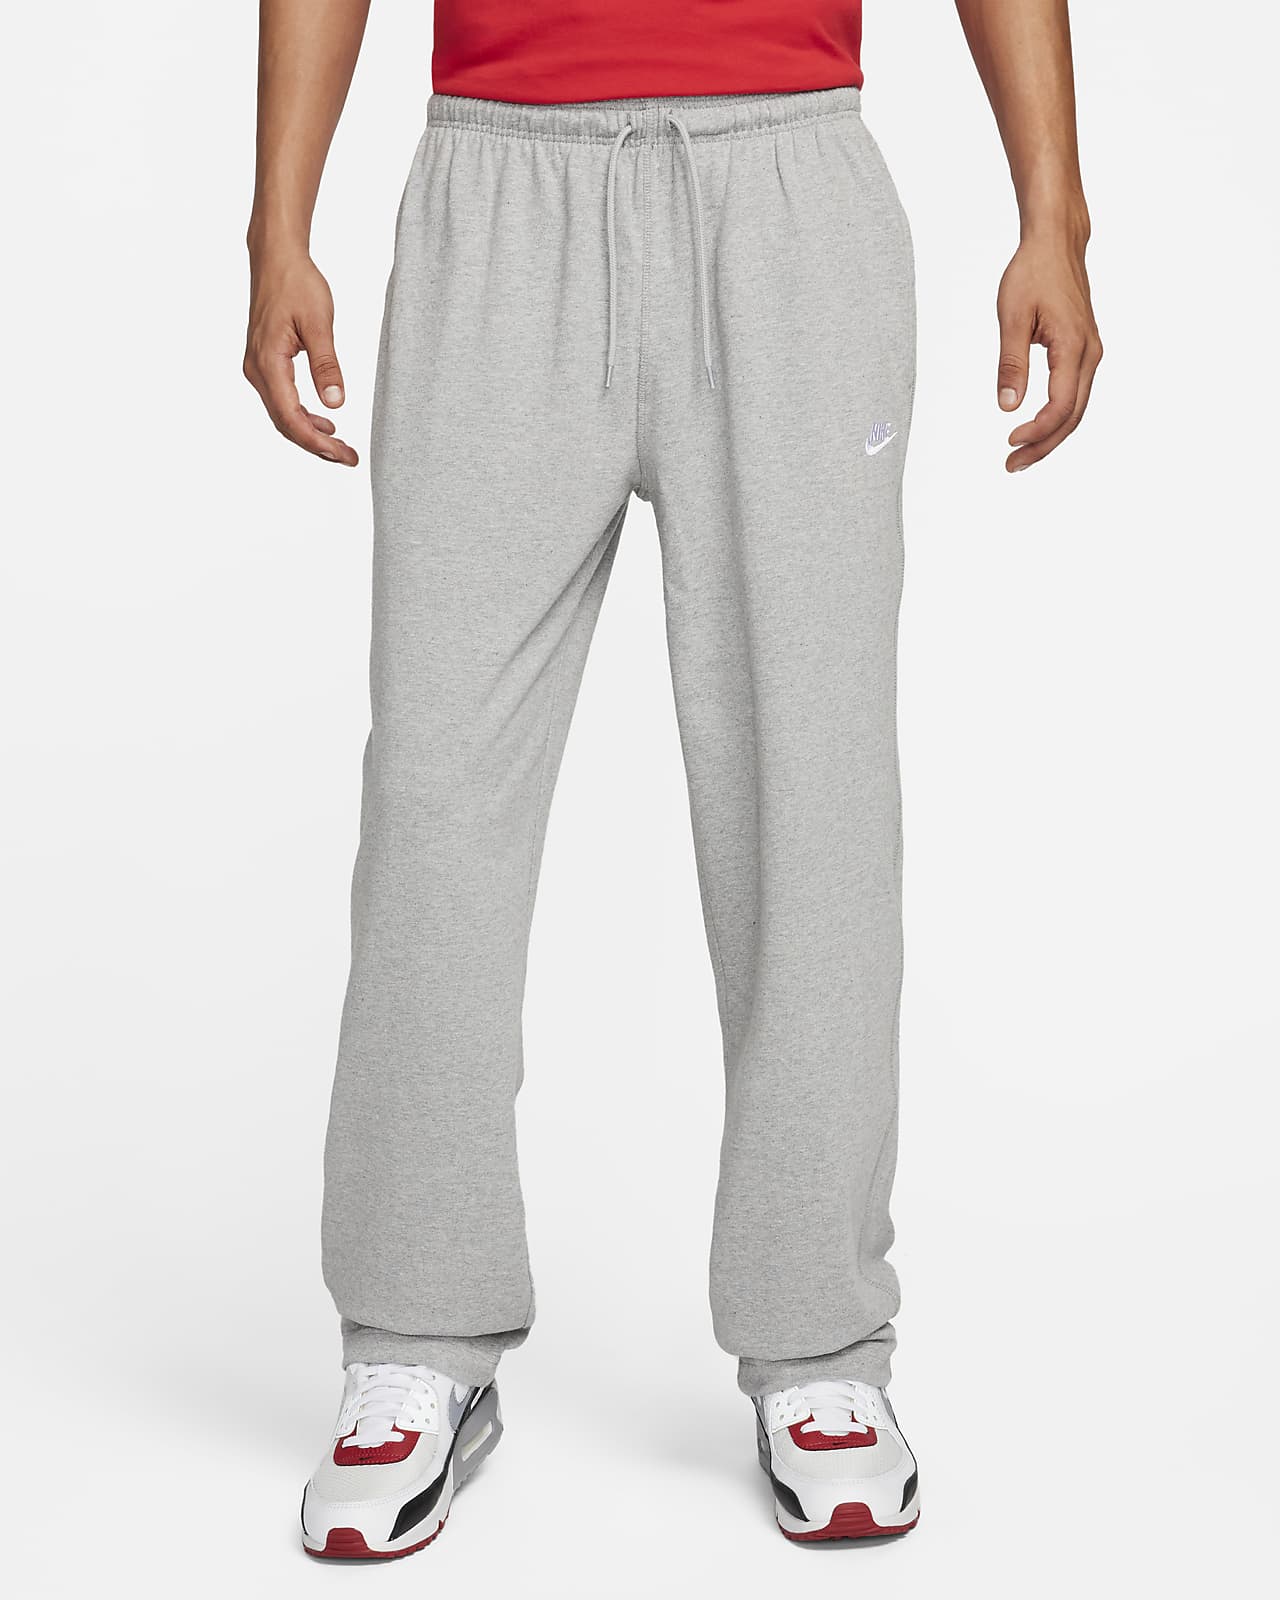 Pants de dobladillo abierto de tejido Knit para hombre Nike Sportswear Club